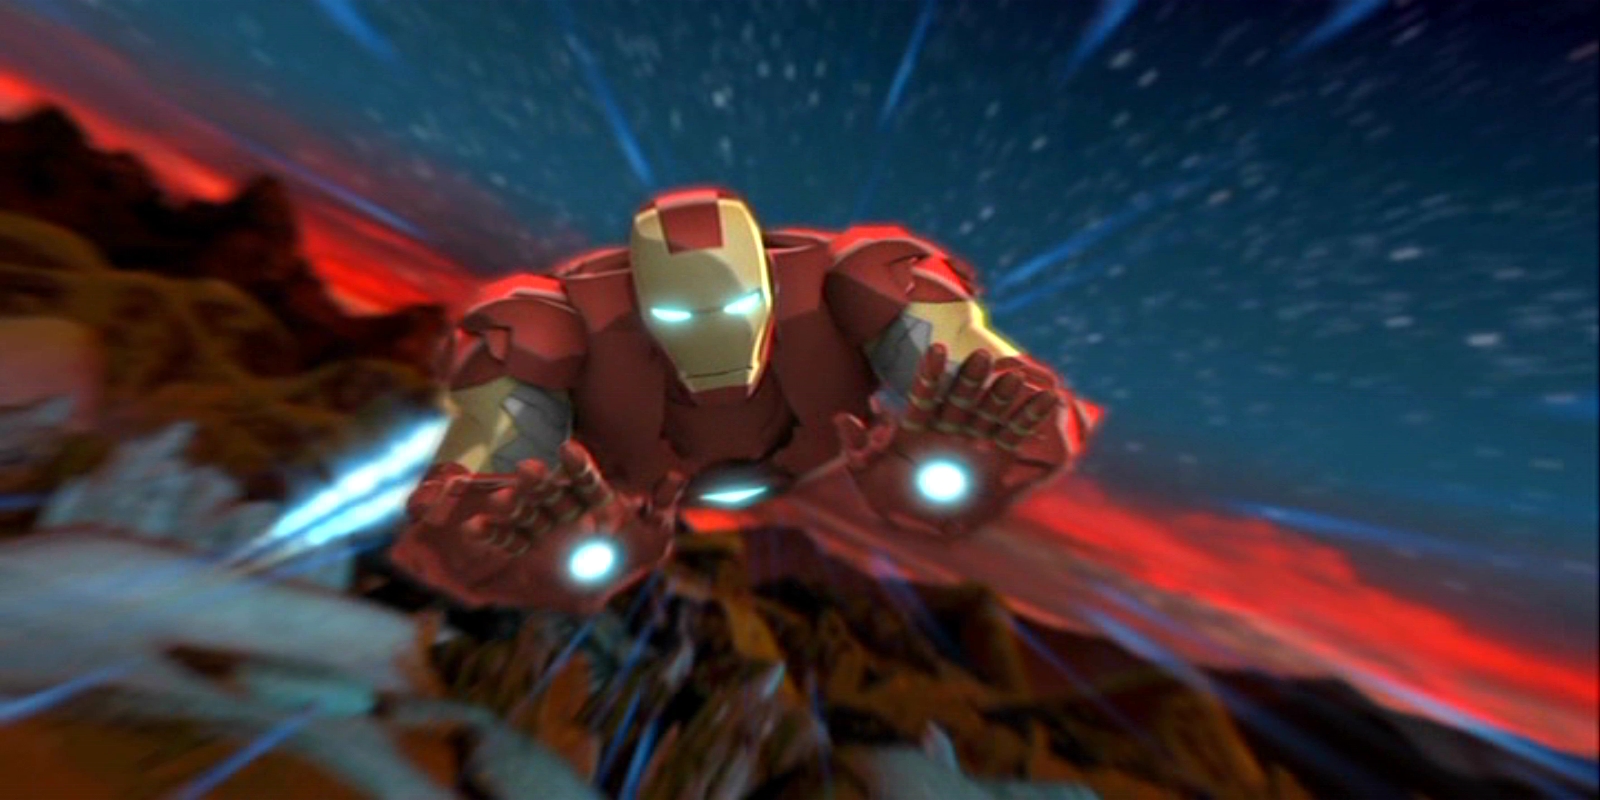 Descargar las imágenes de Iron Man gratis para teléfonos Android y iPhone, fondos  de pantalla de Iron Man para teléfonos móviles